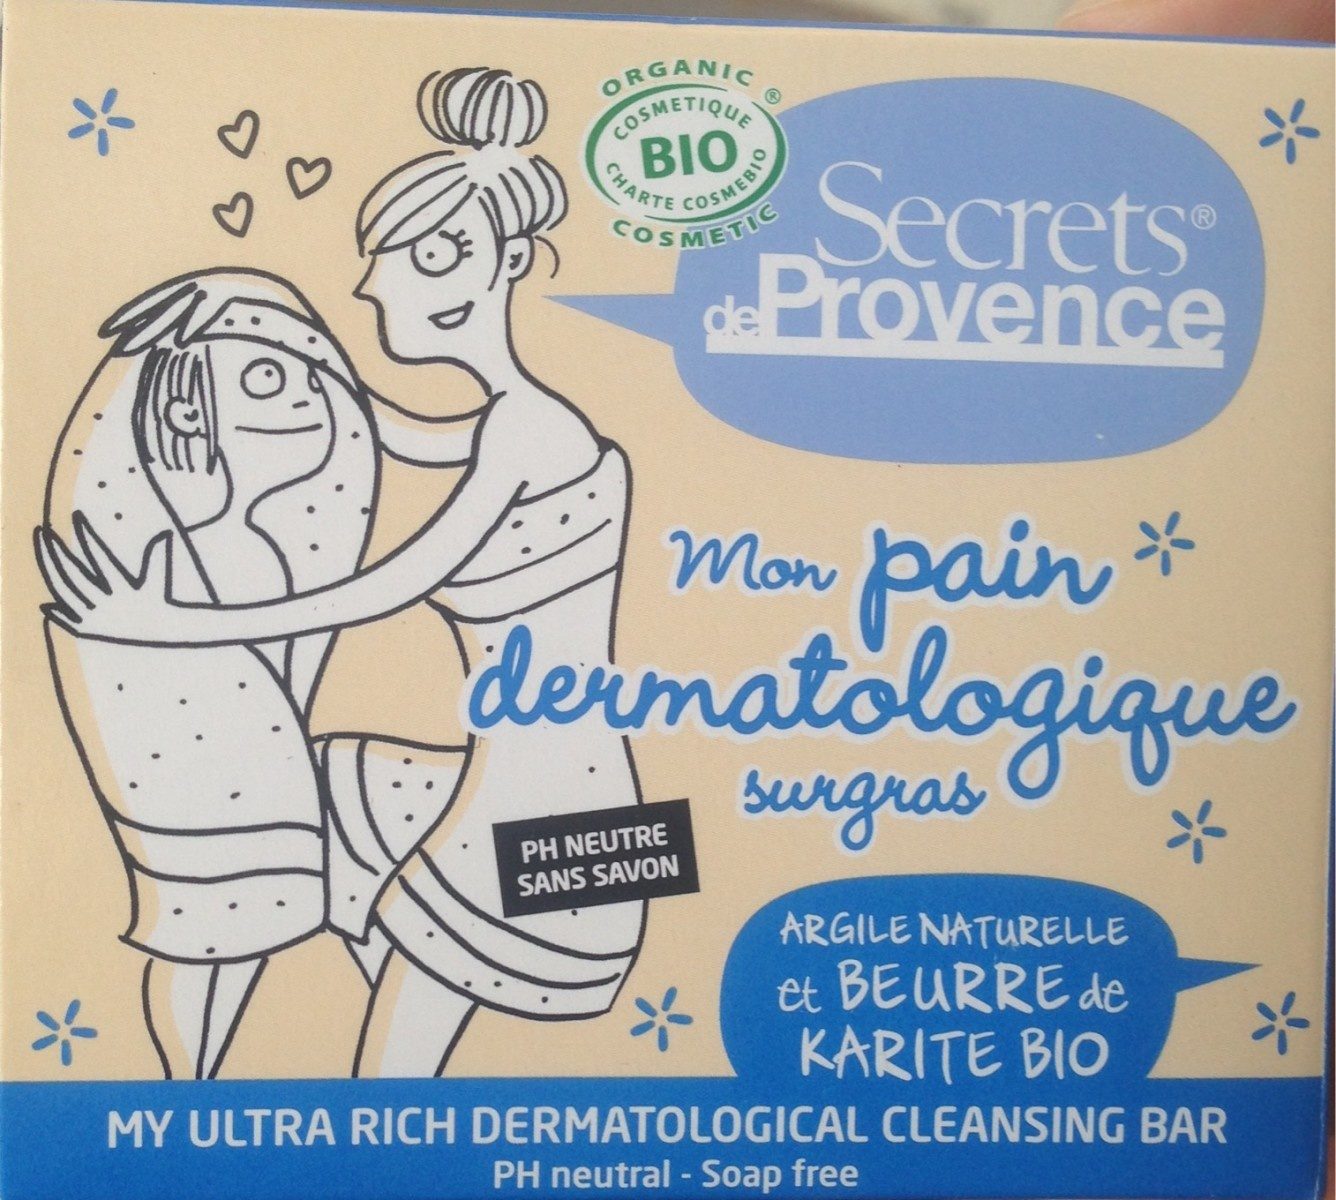 Pain Dermatologique Sugras Bio - Produkt - fr